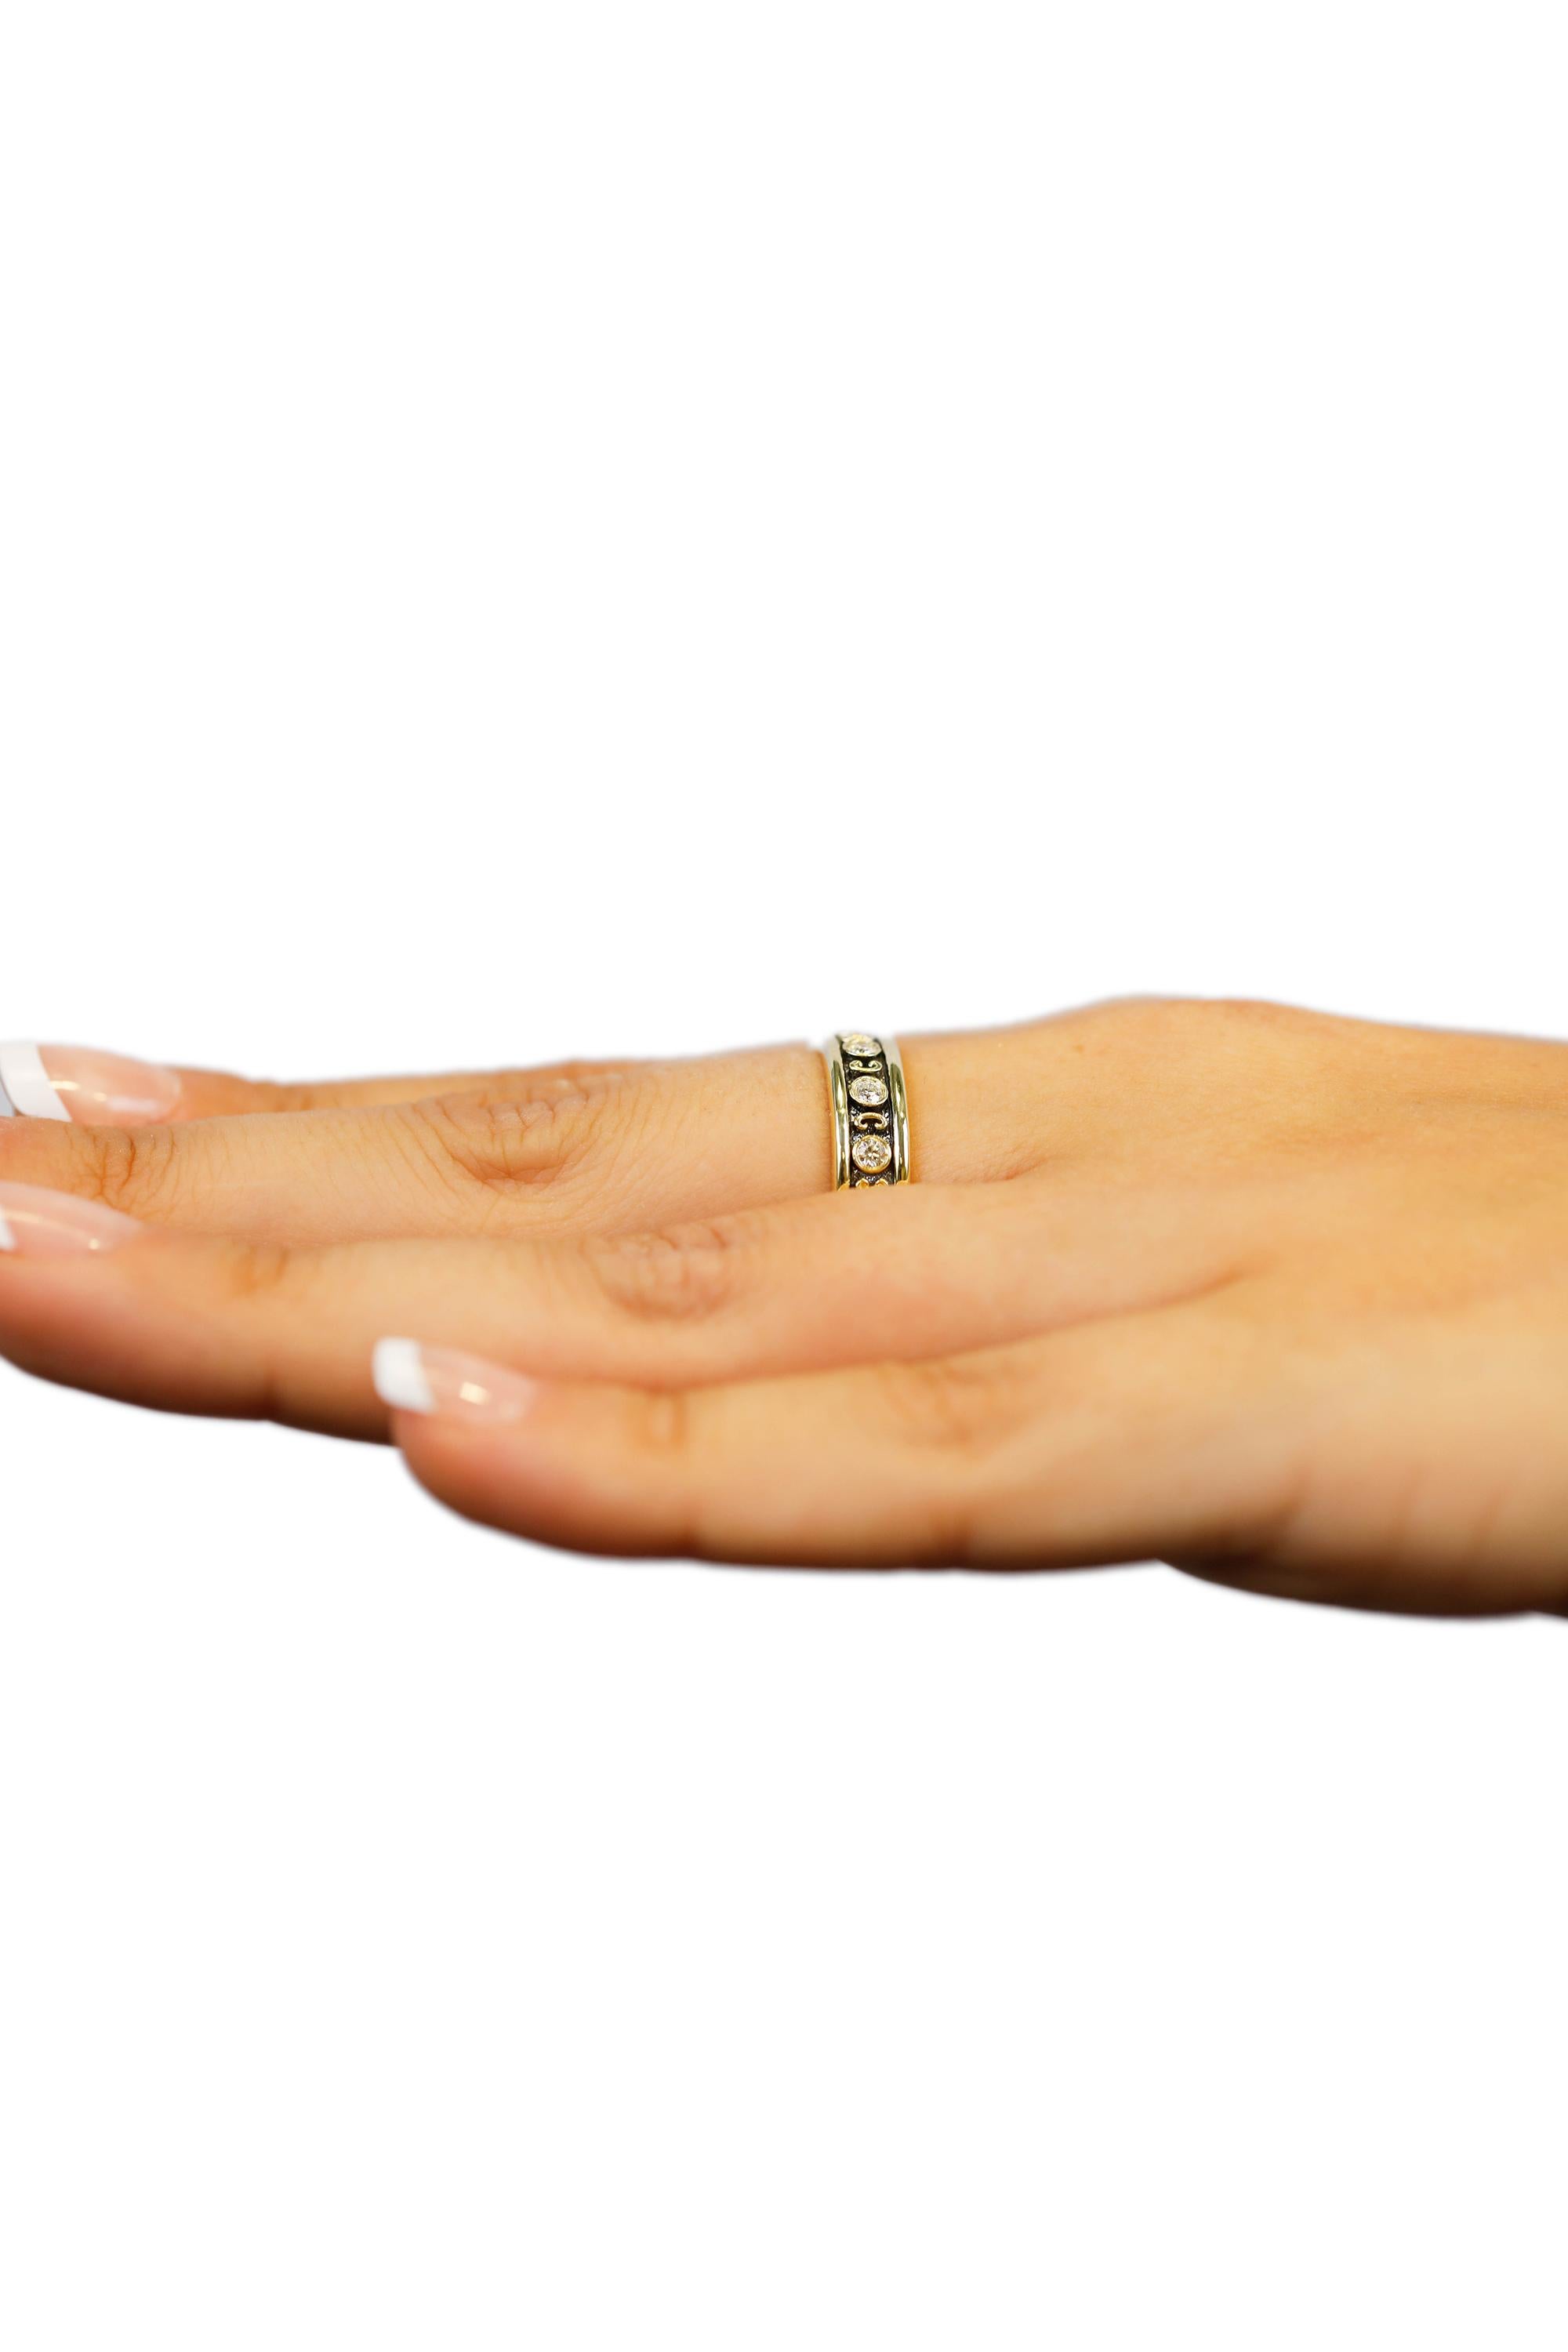 18 Karat Yellow Gold 0.35 Carat Round Diamond Band Ring US Size 6 1